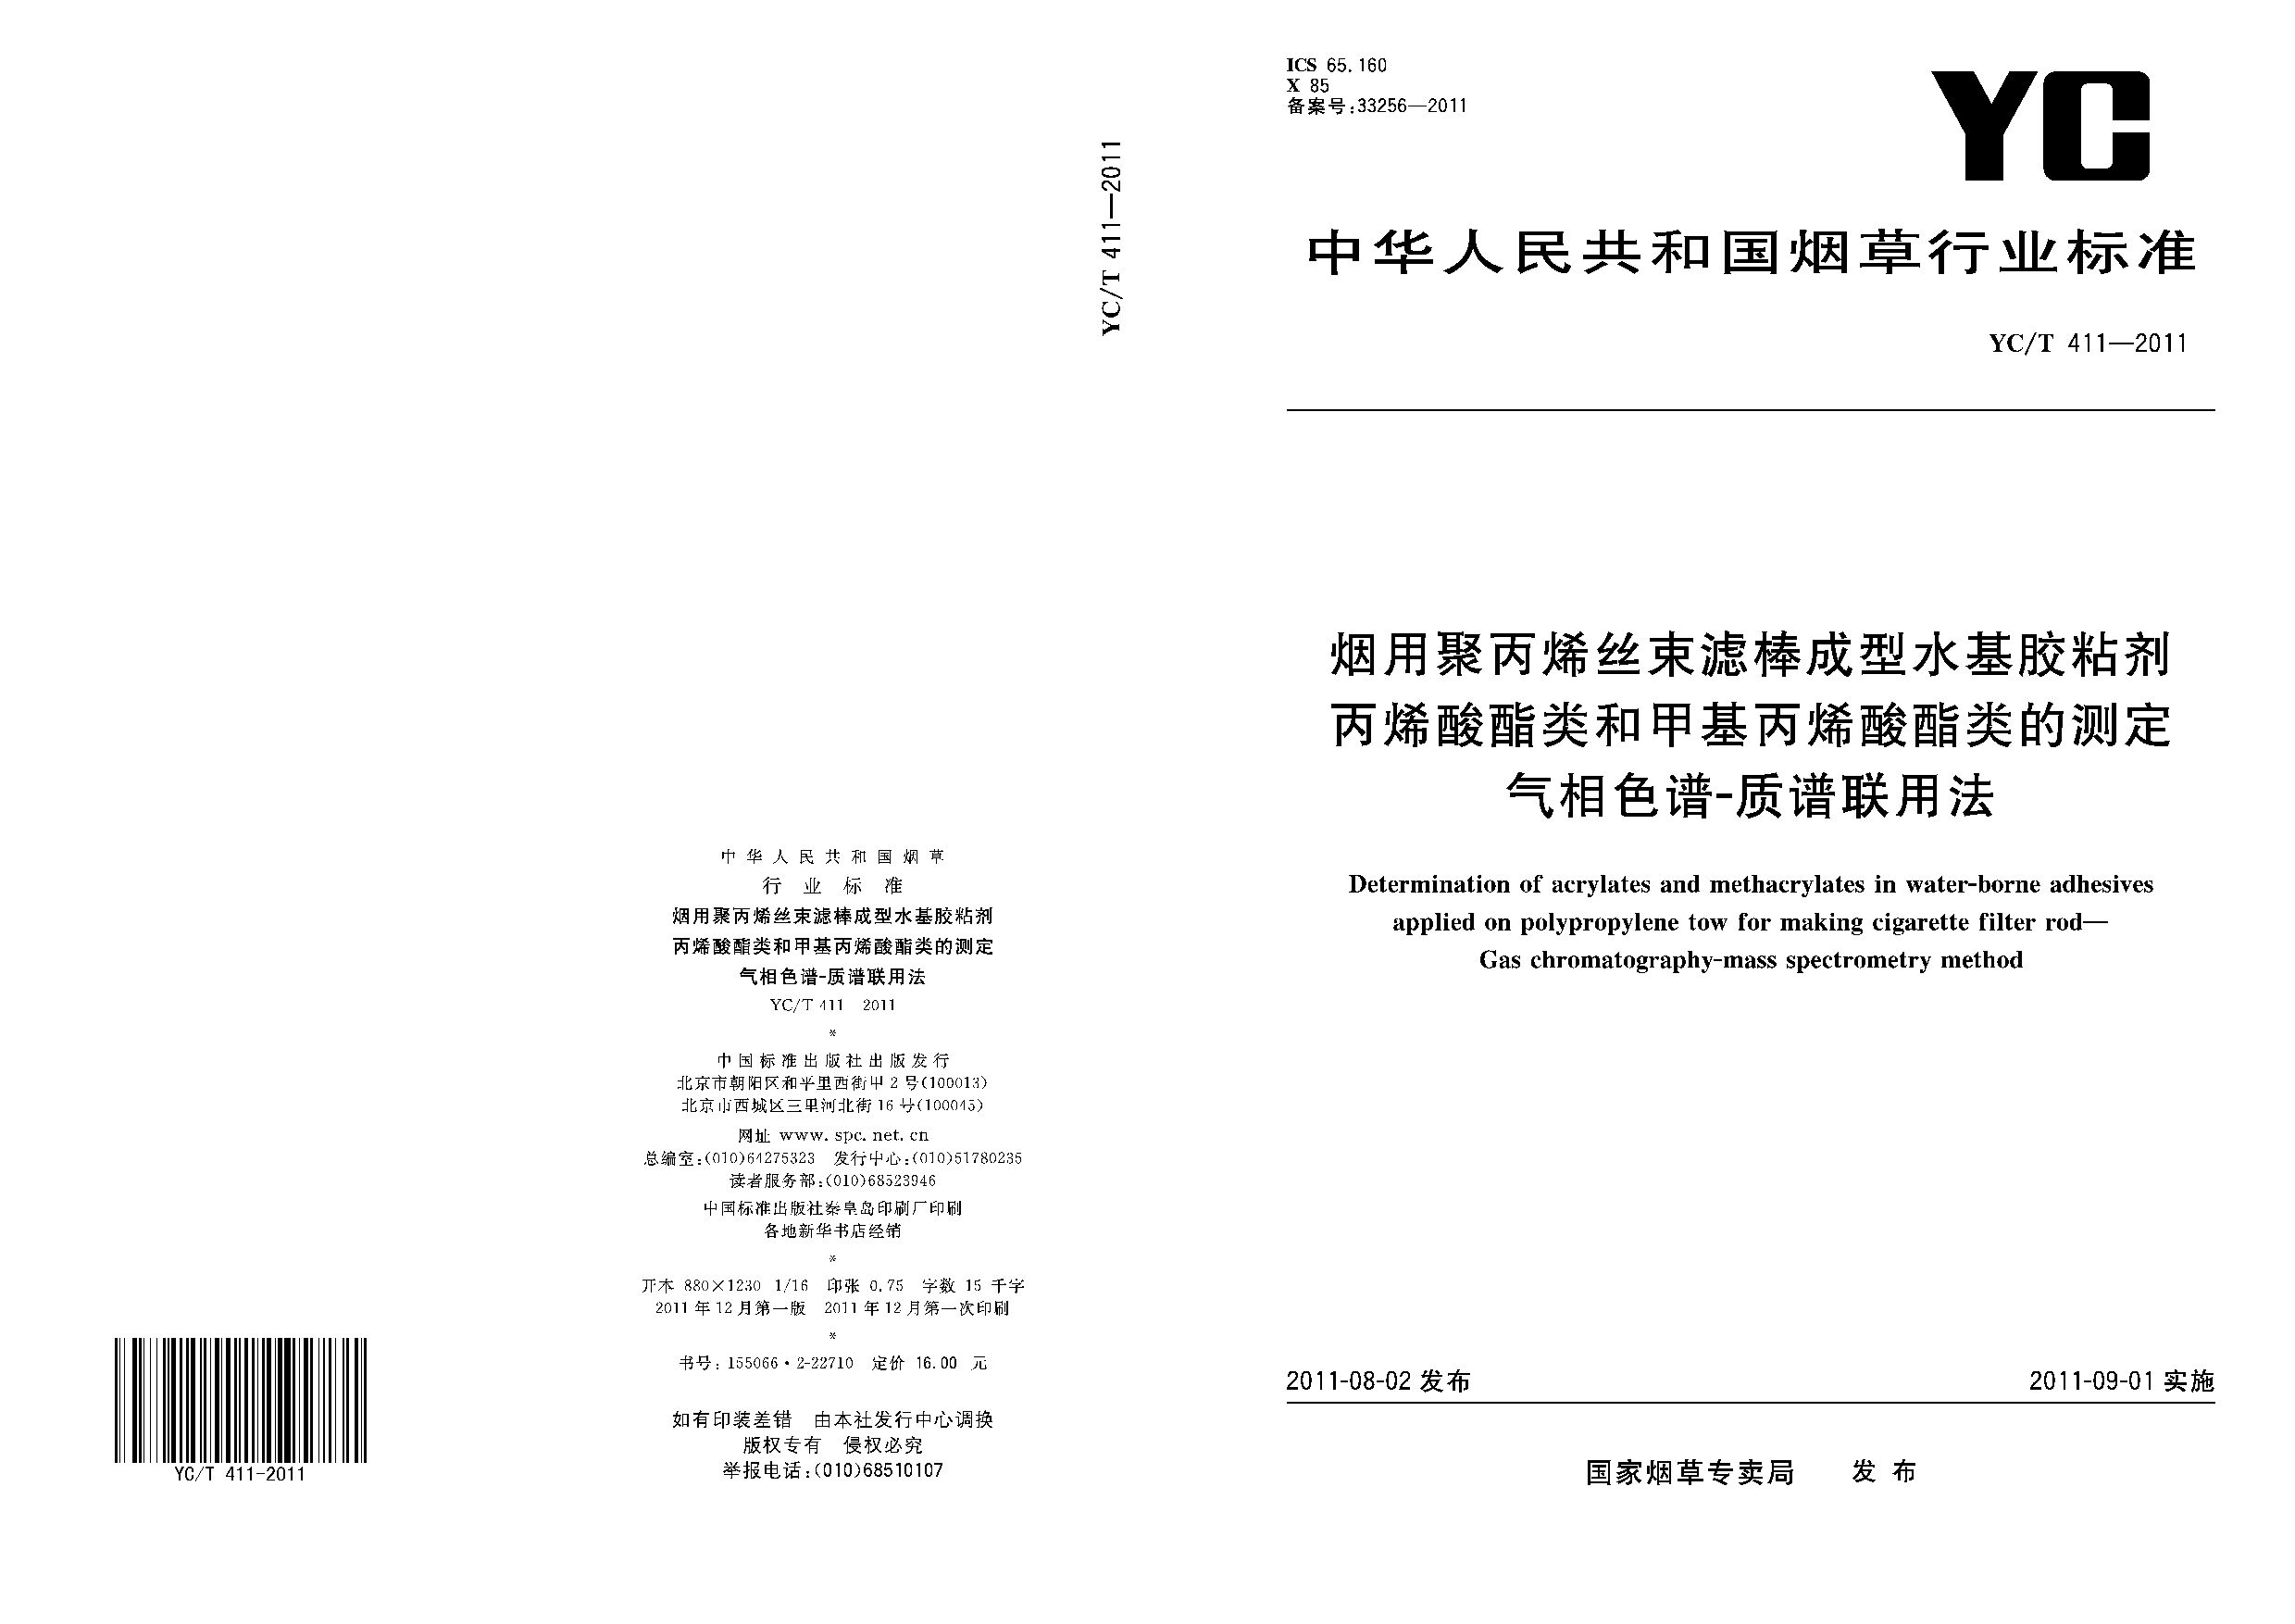 YC/T 411-2011封面图